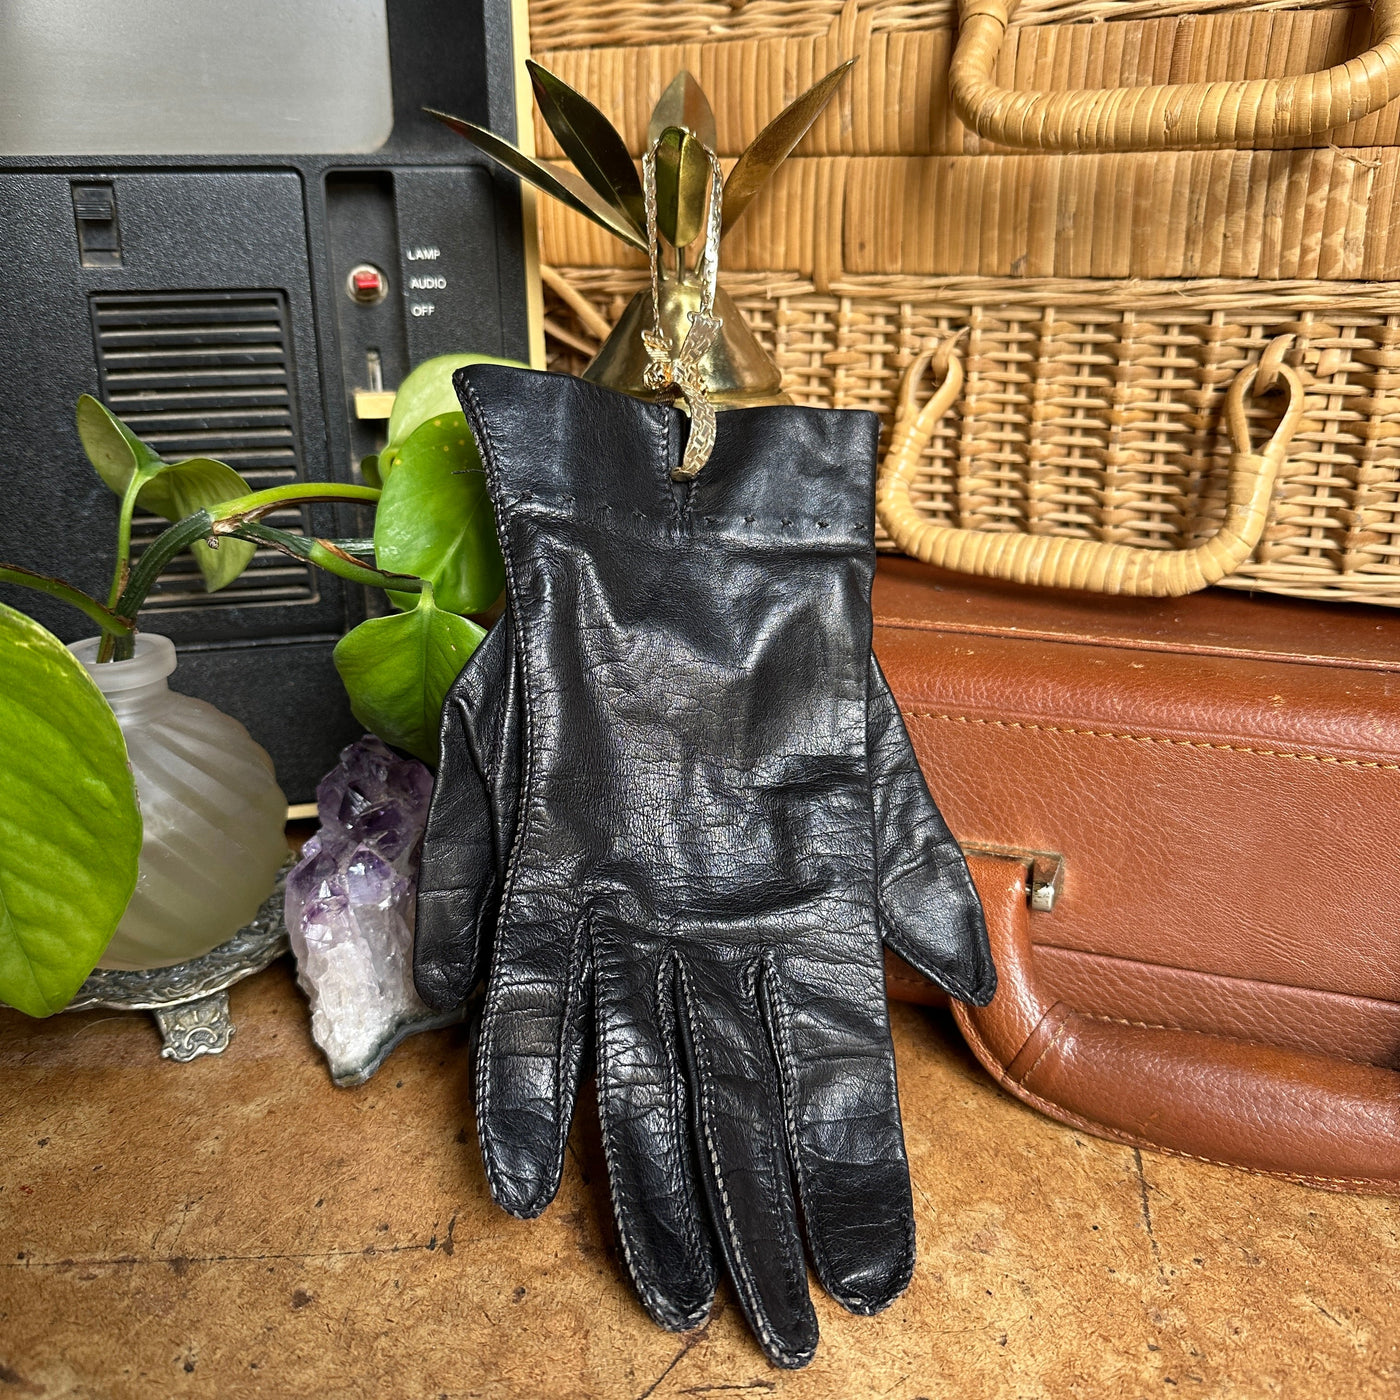 Vintage Black Leather Women’s Gloves